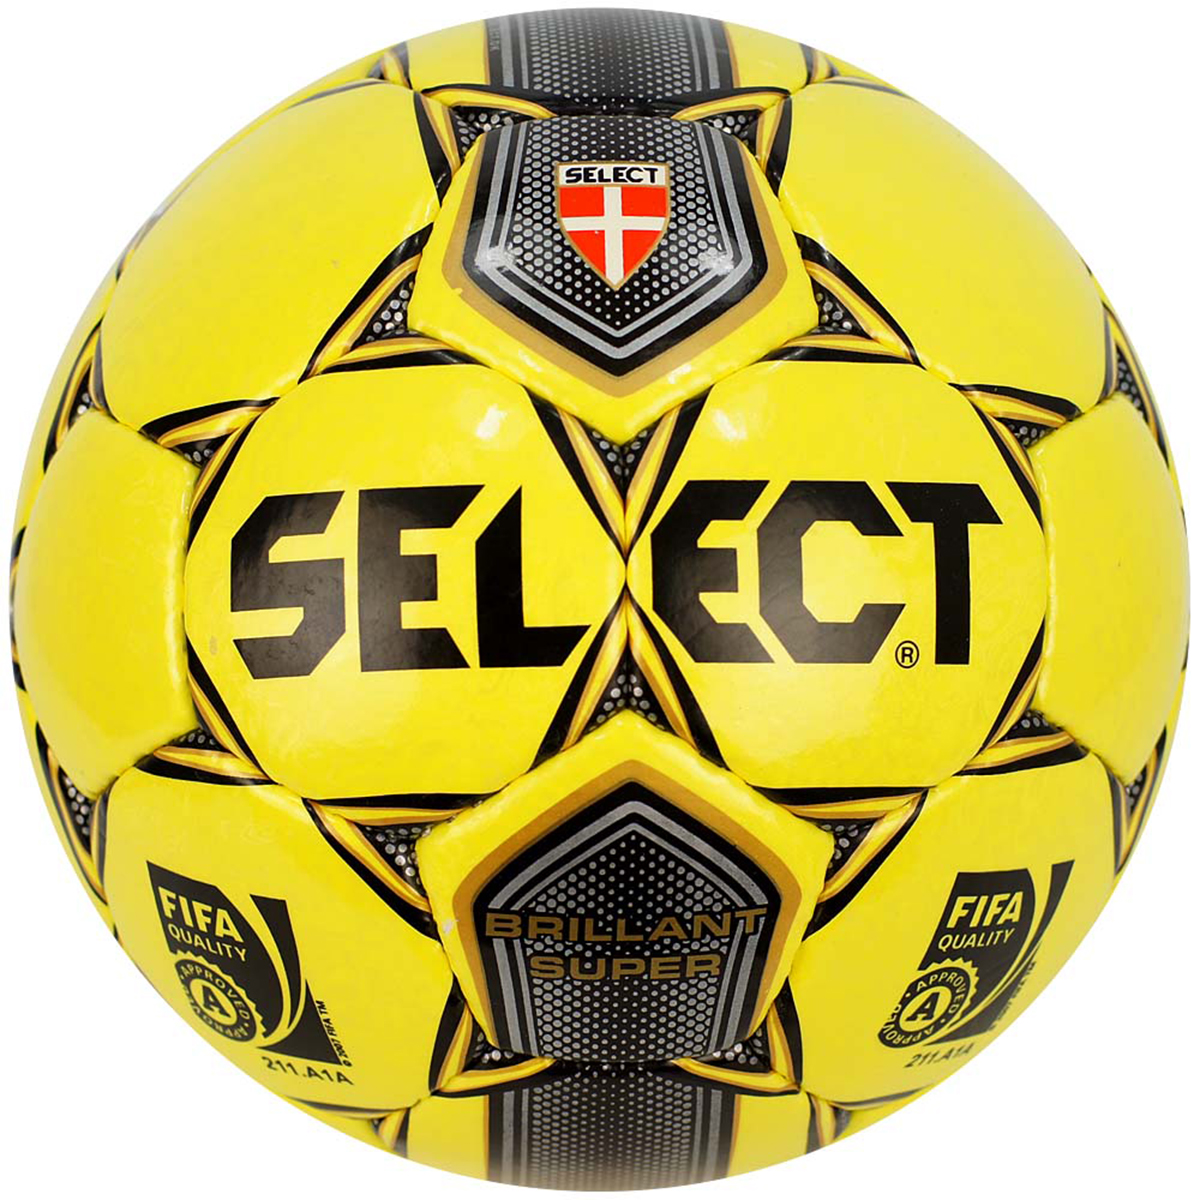 Футбольный мяч select. Мяч select Brilliant super 5. Футбольный мяч select brillant. Футбольный мяч select Brilliant super. Футбольный мяч select brillant super FIFA 211.a1a.